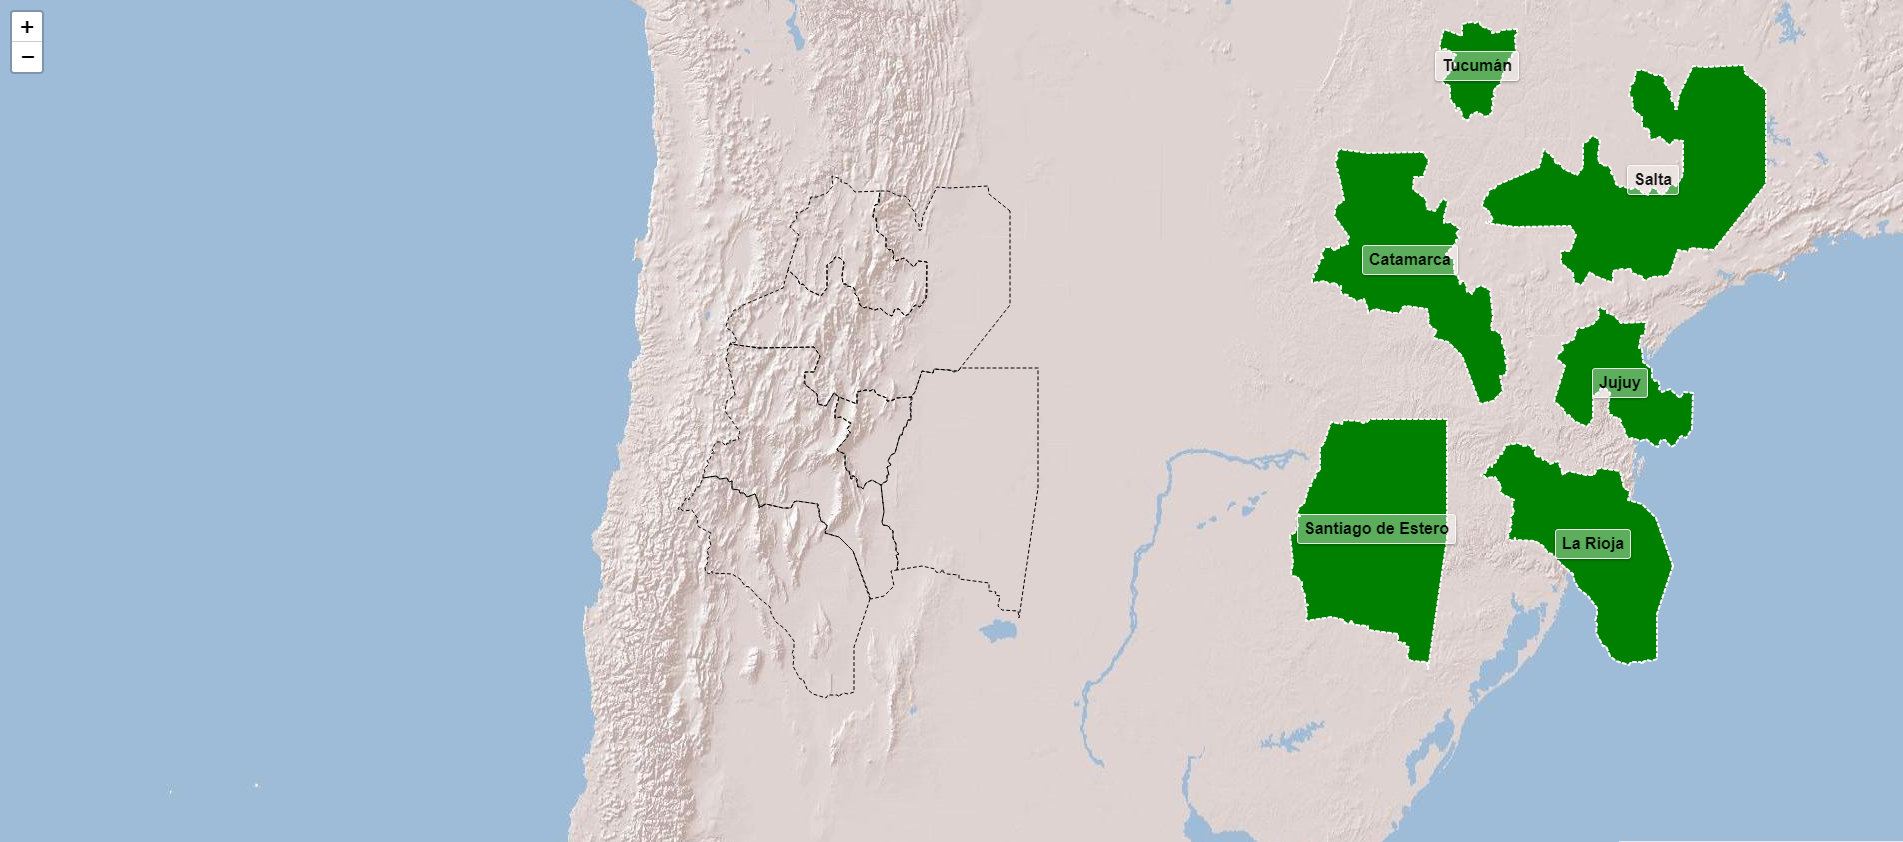 Provincias de la región noroeste de Argentina